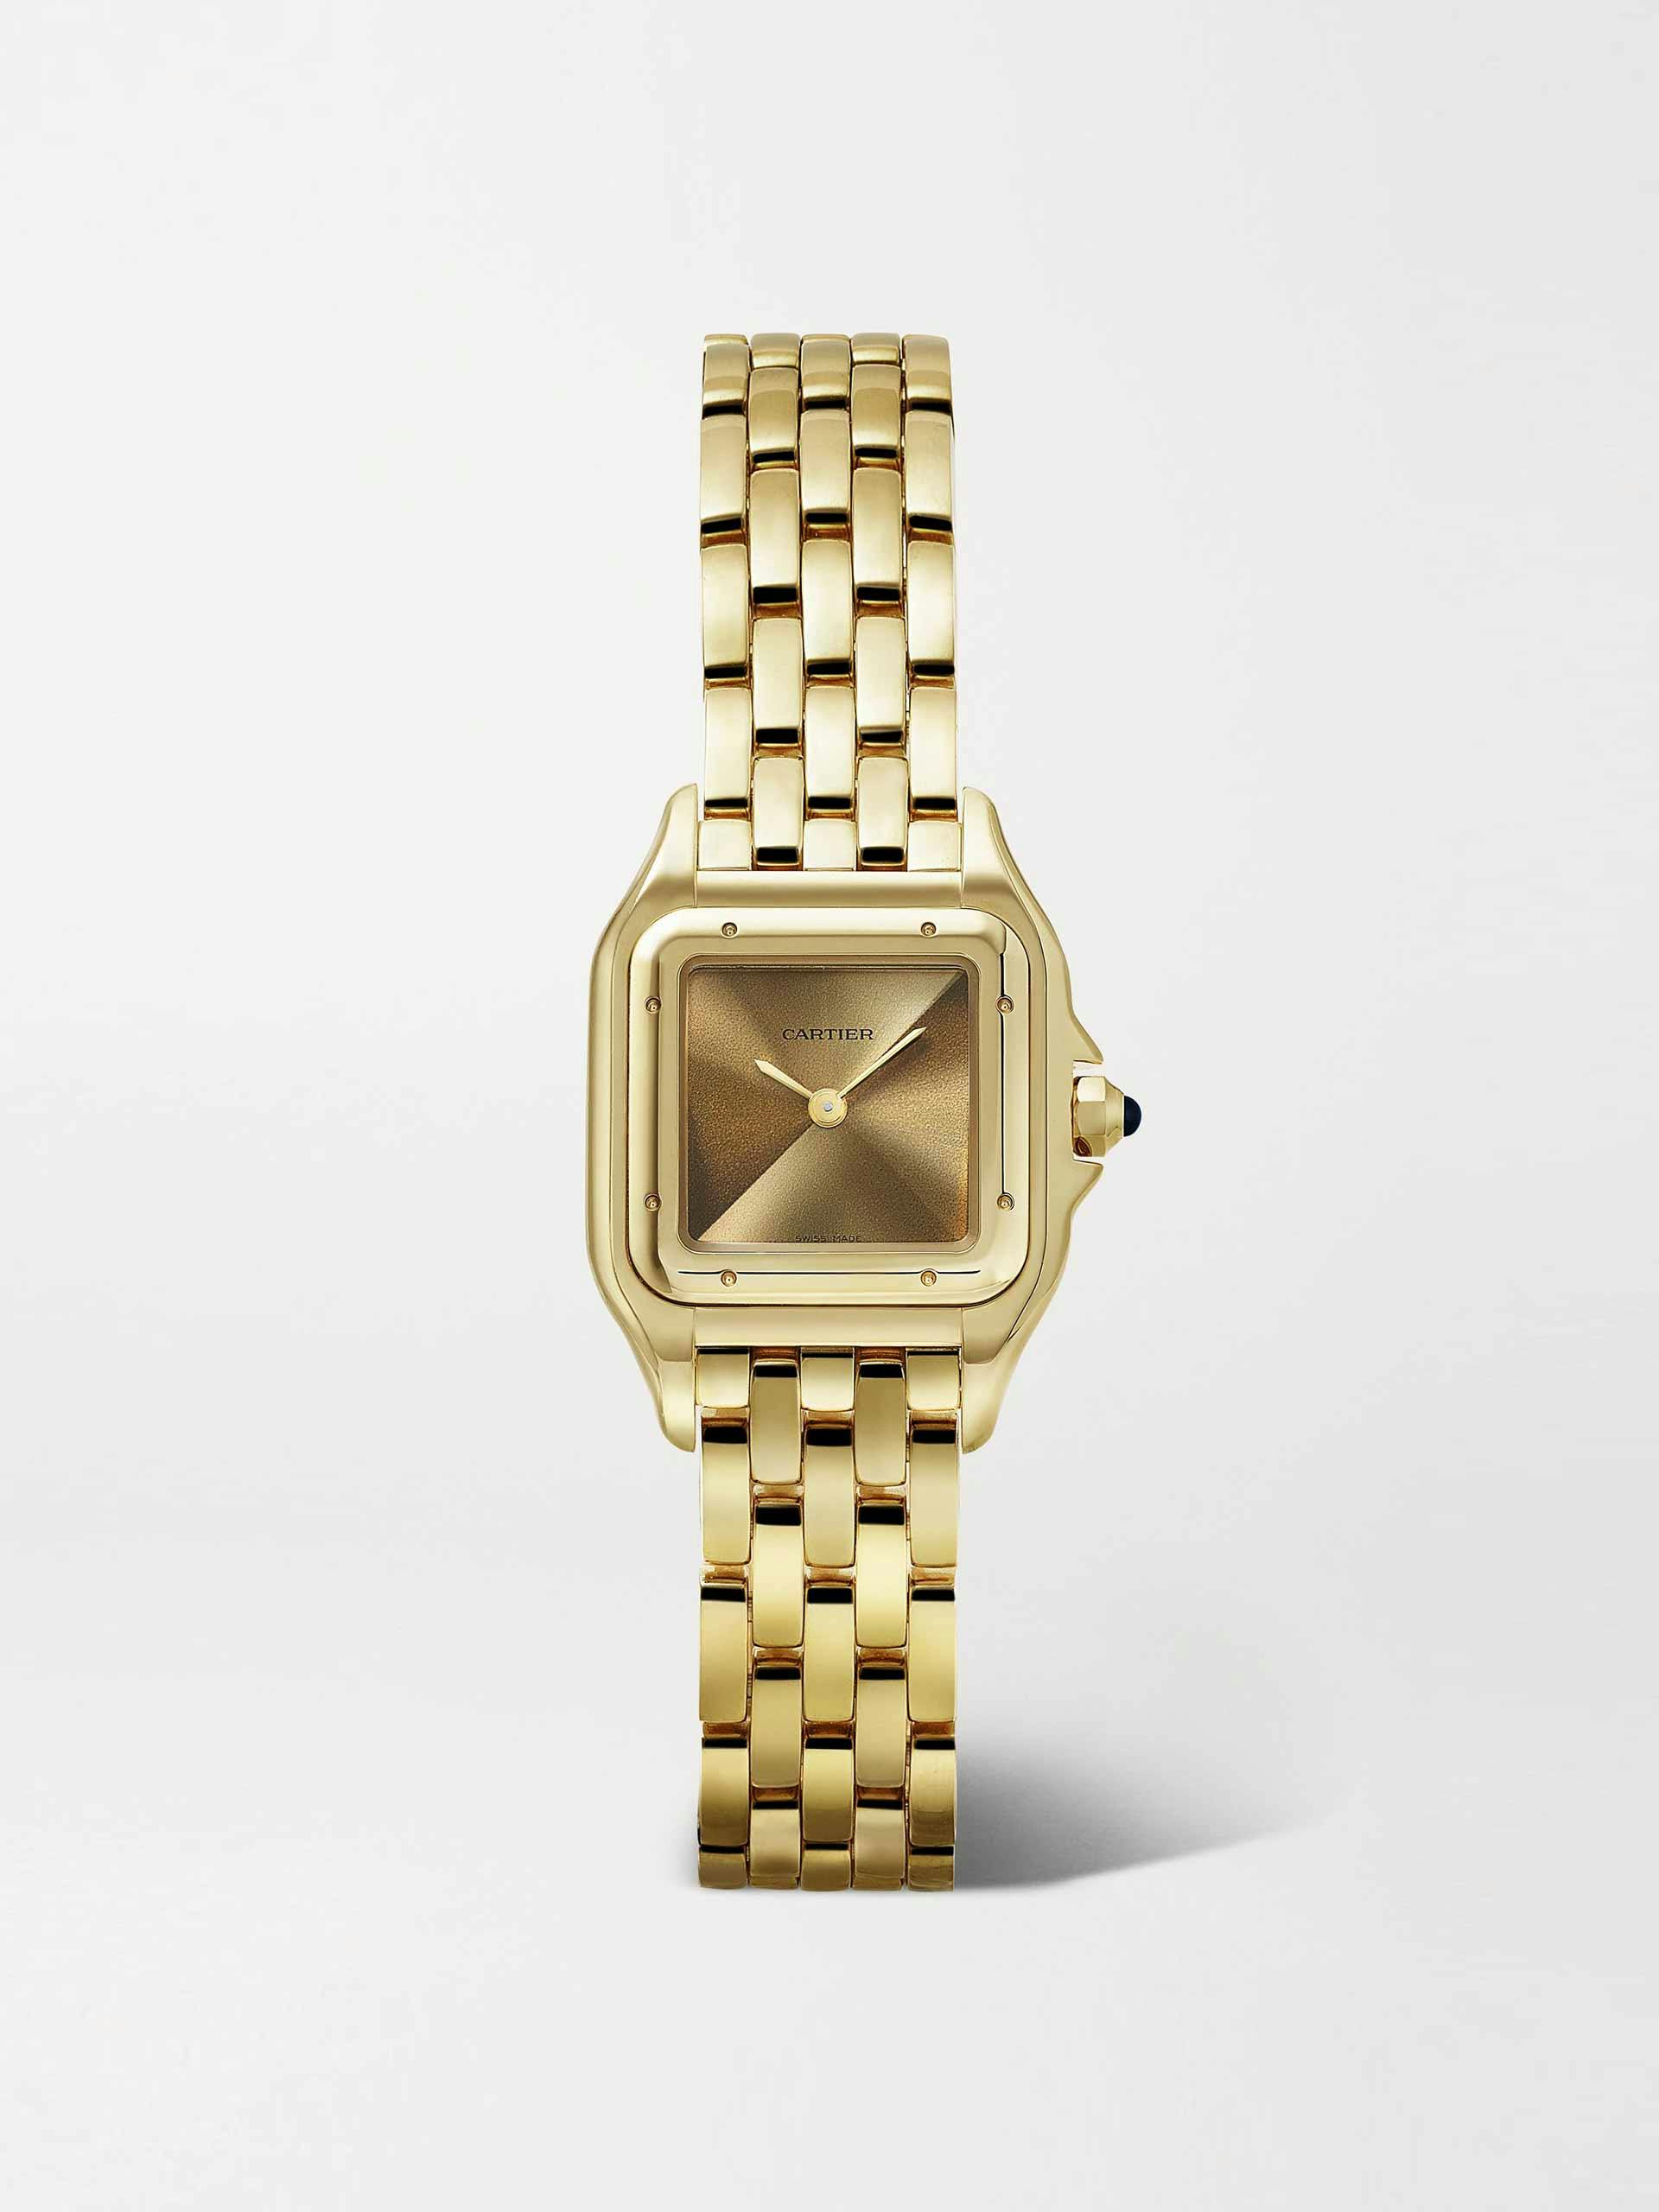 Panthère de Cartier small gold watch